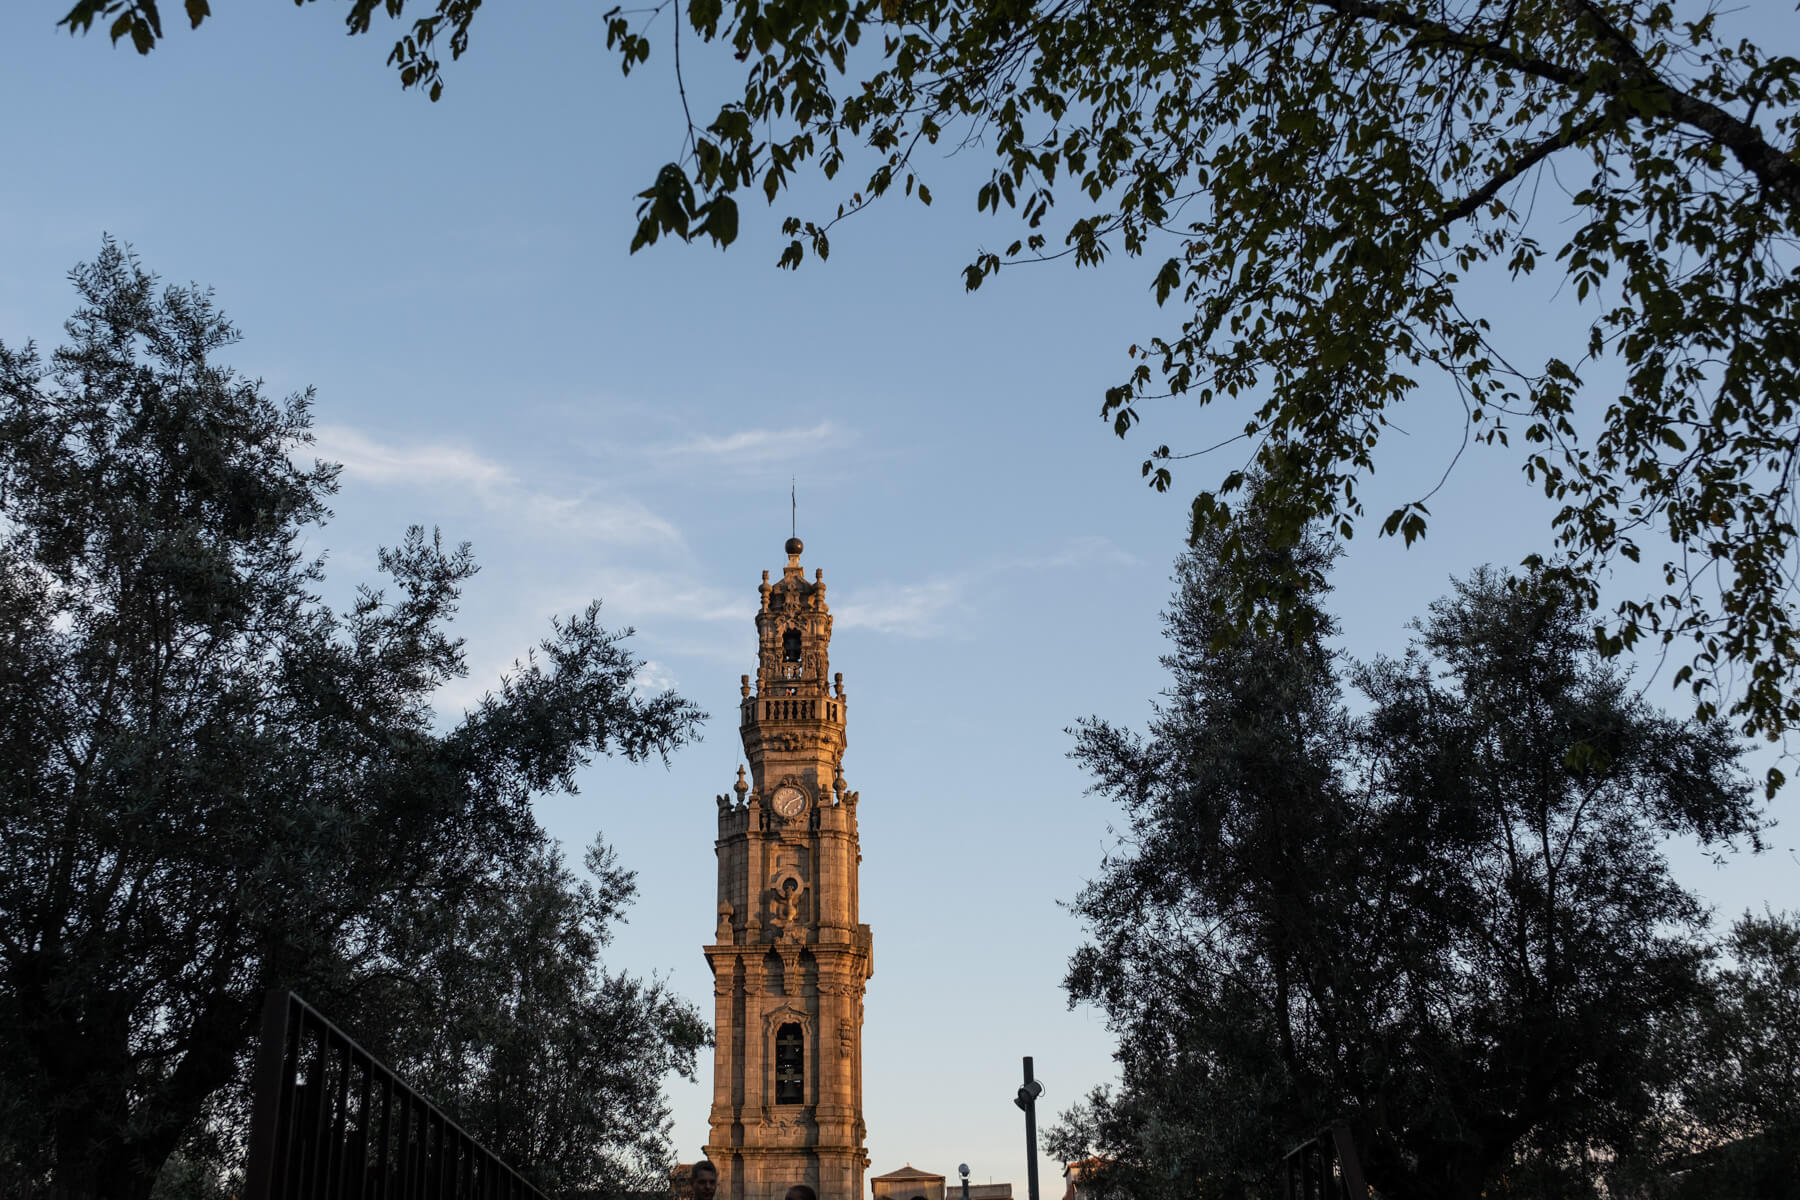 Clérigos Tower in Porto Bucket List